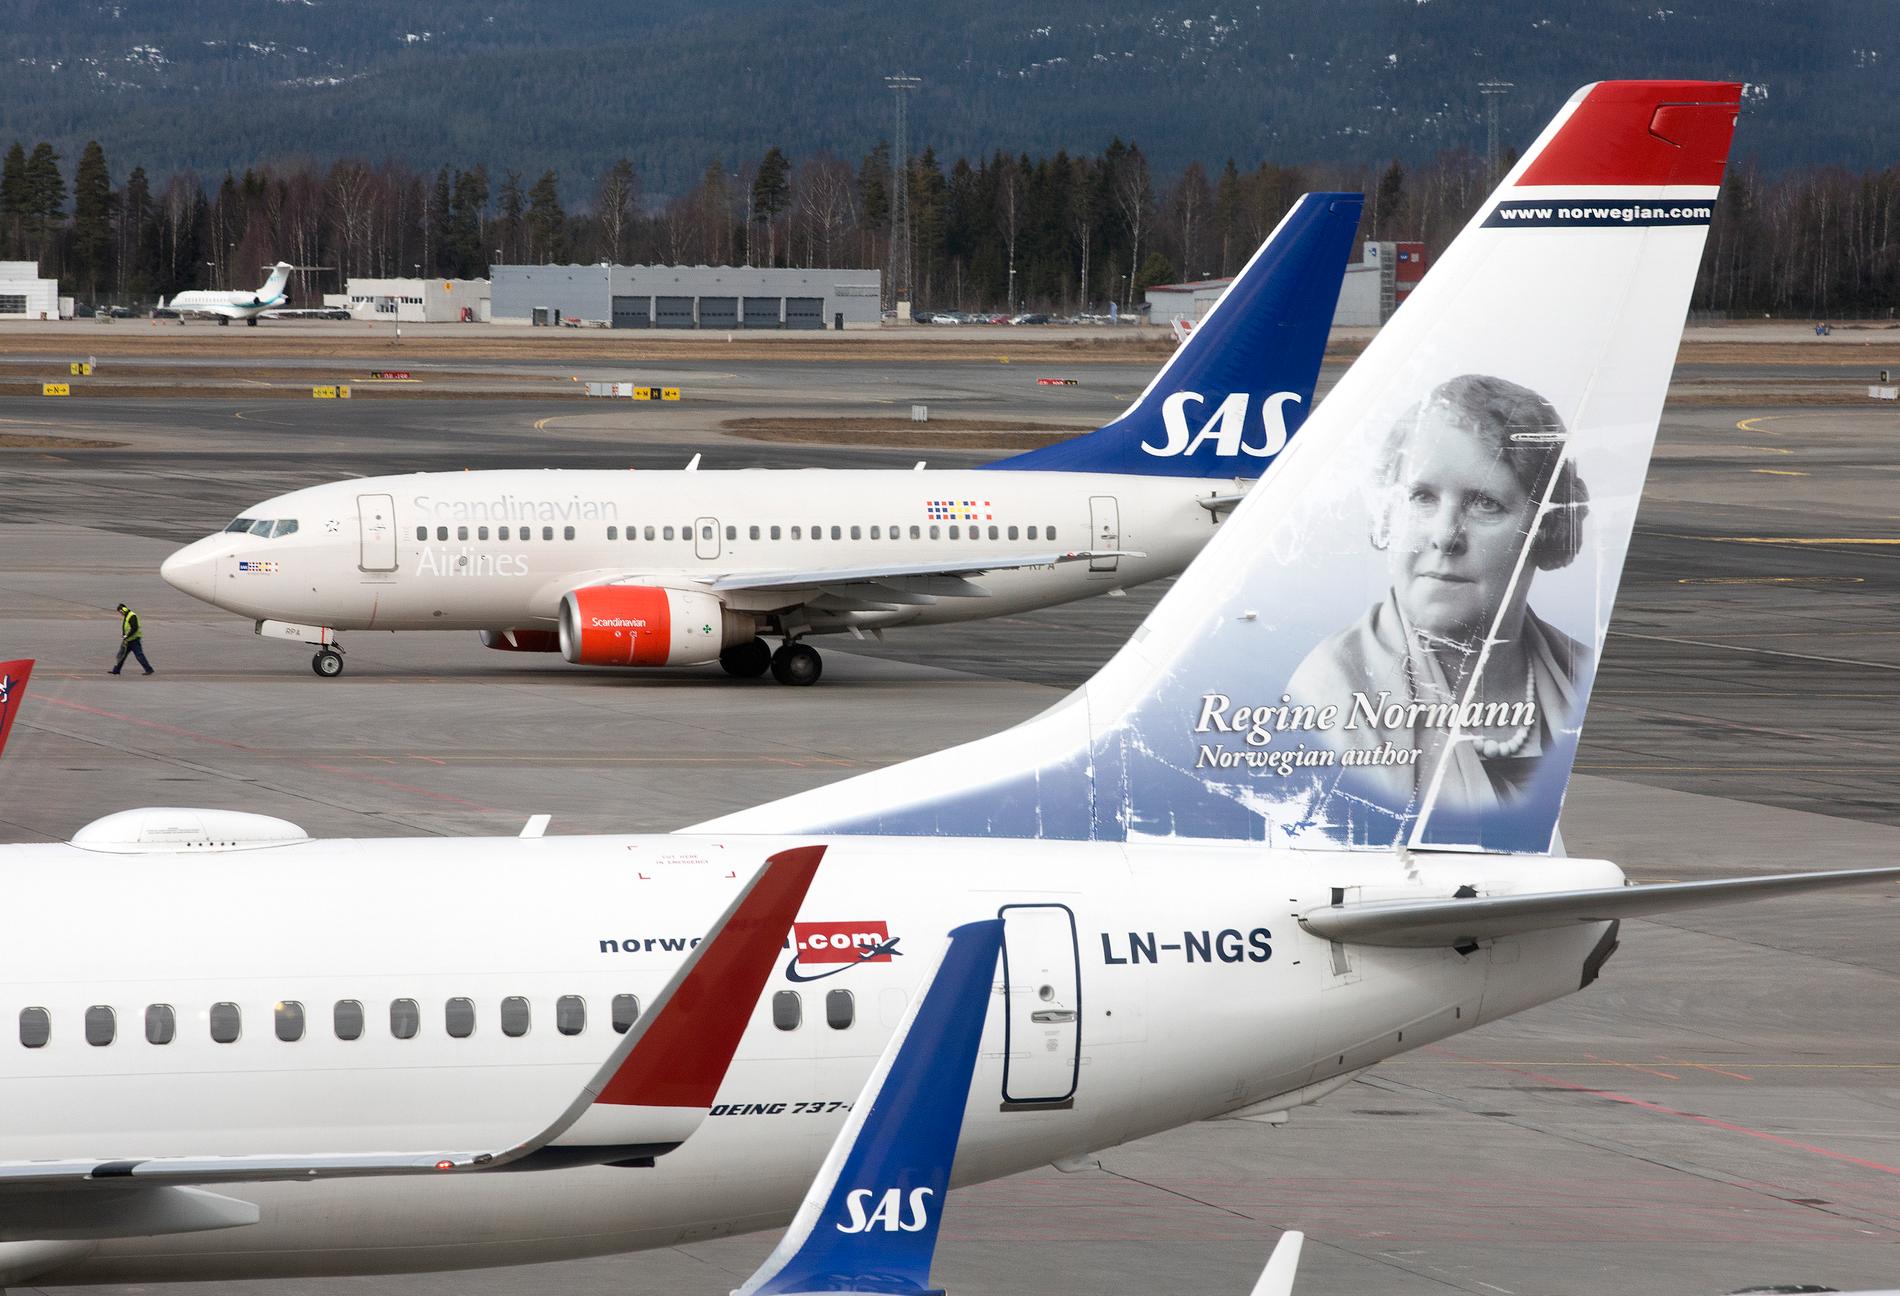 Efter den kalla våren är bokningstrycket på resor till södra Europa stort, enligt flygbolagen Norwegian och SAS. Arkivbild.